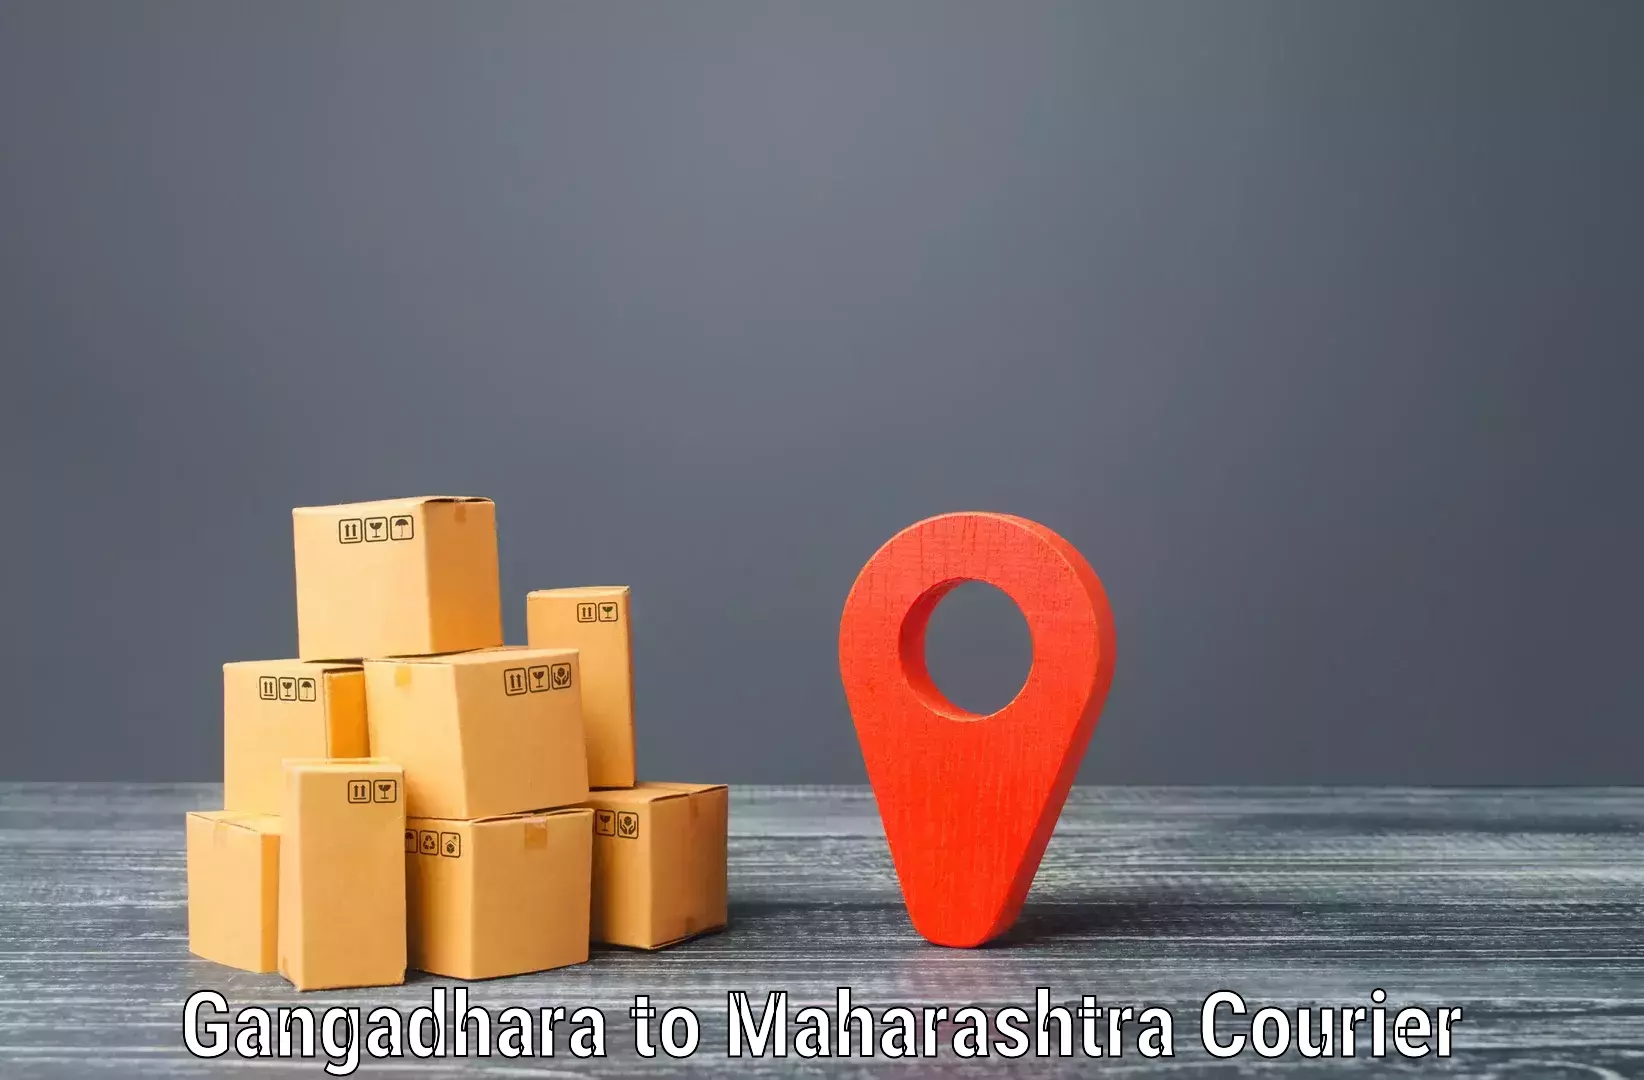 Speedy delivery service Gangadhara to Maharashtra